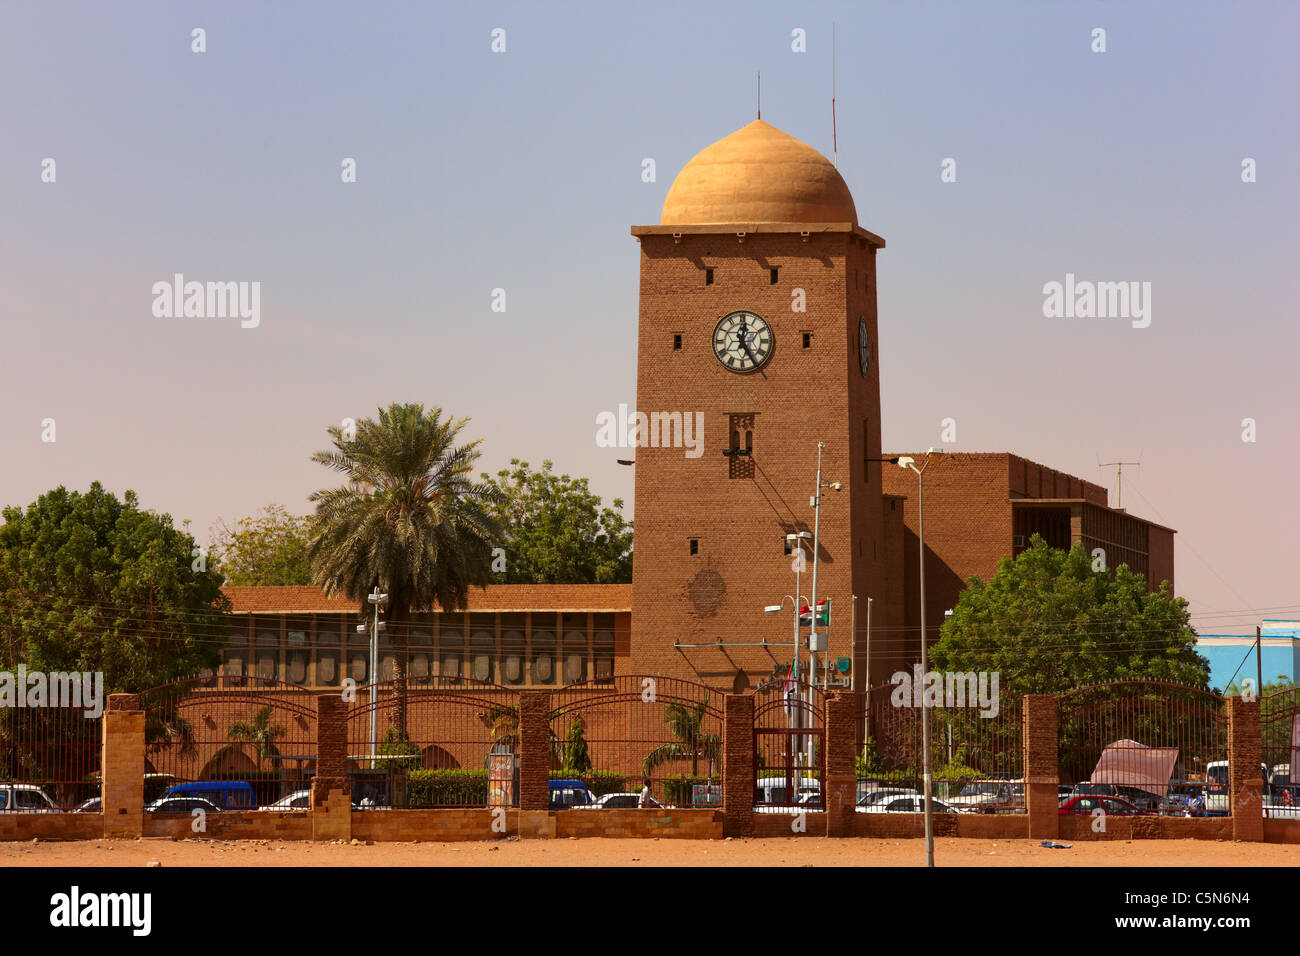 Tour de l'horloge d'édifice municipal, d'Omdurman Omdurman, le nord du Soudan, Afrique Banque D'Images